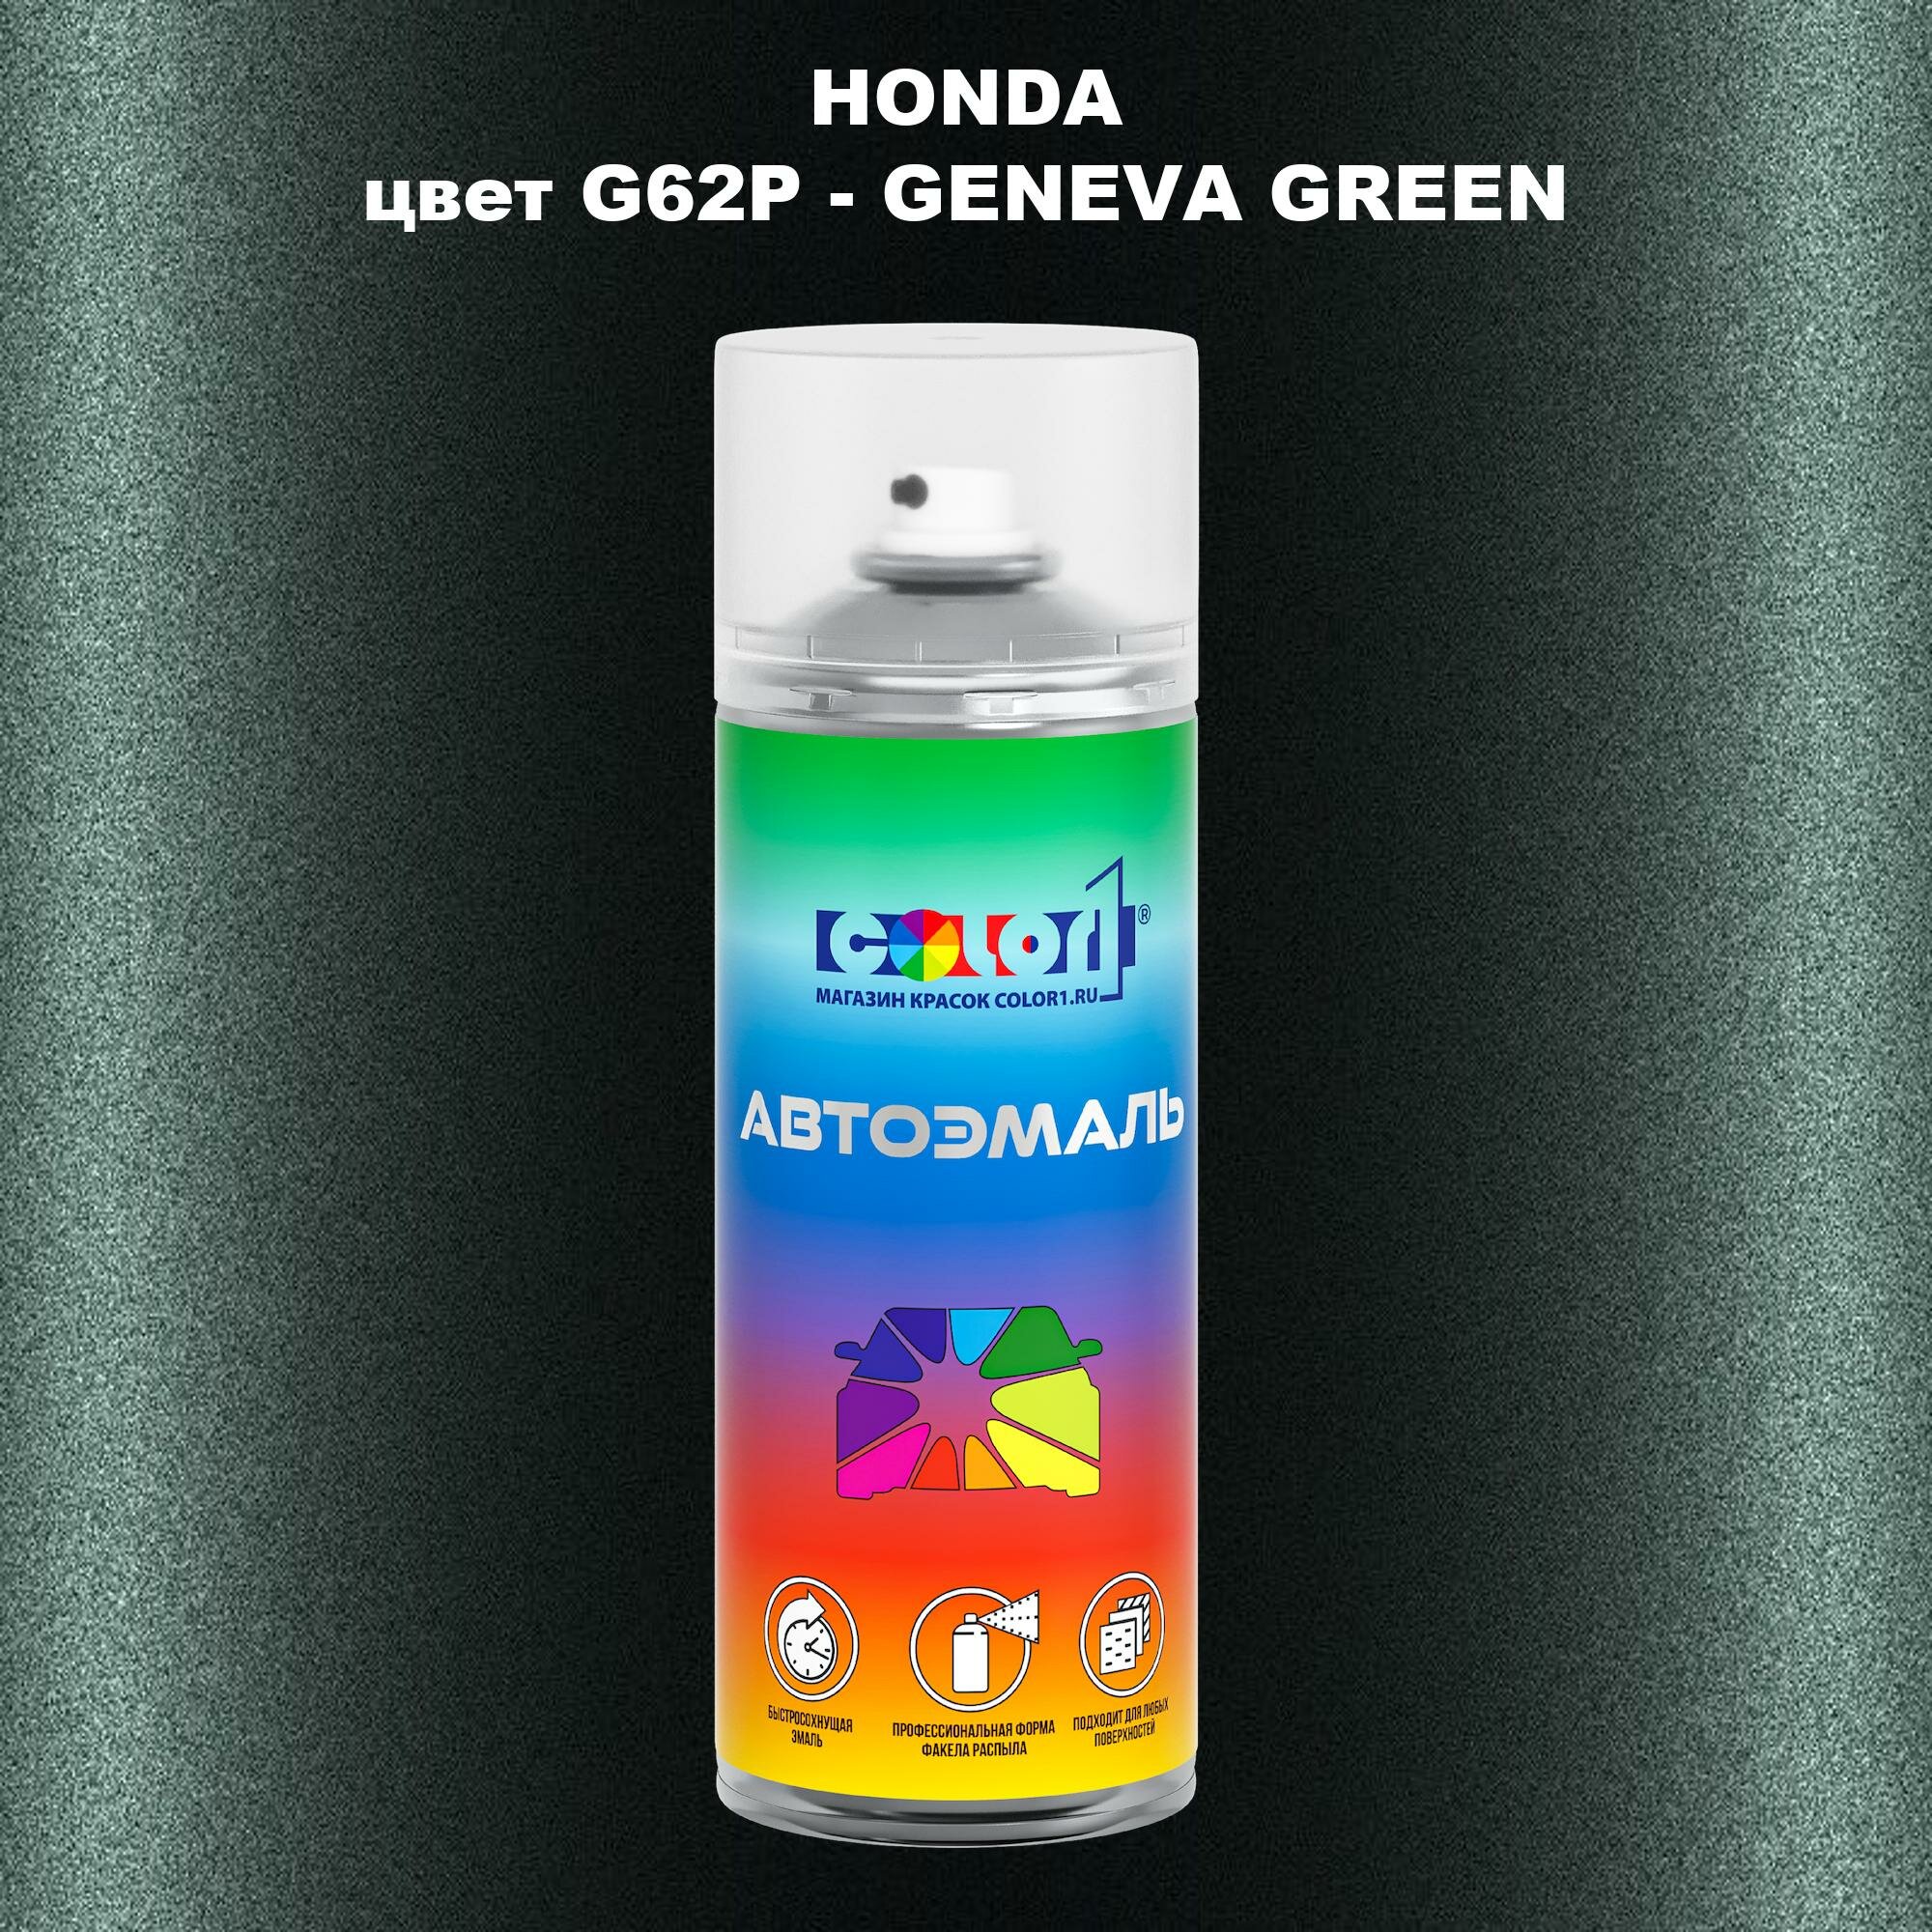 Аэрозольная краска COLOR1 для HONDA, цвет G62P - GENEVA GREEN